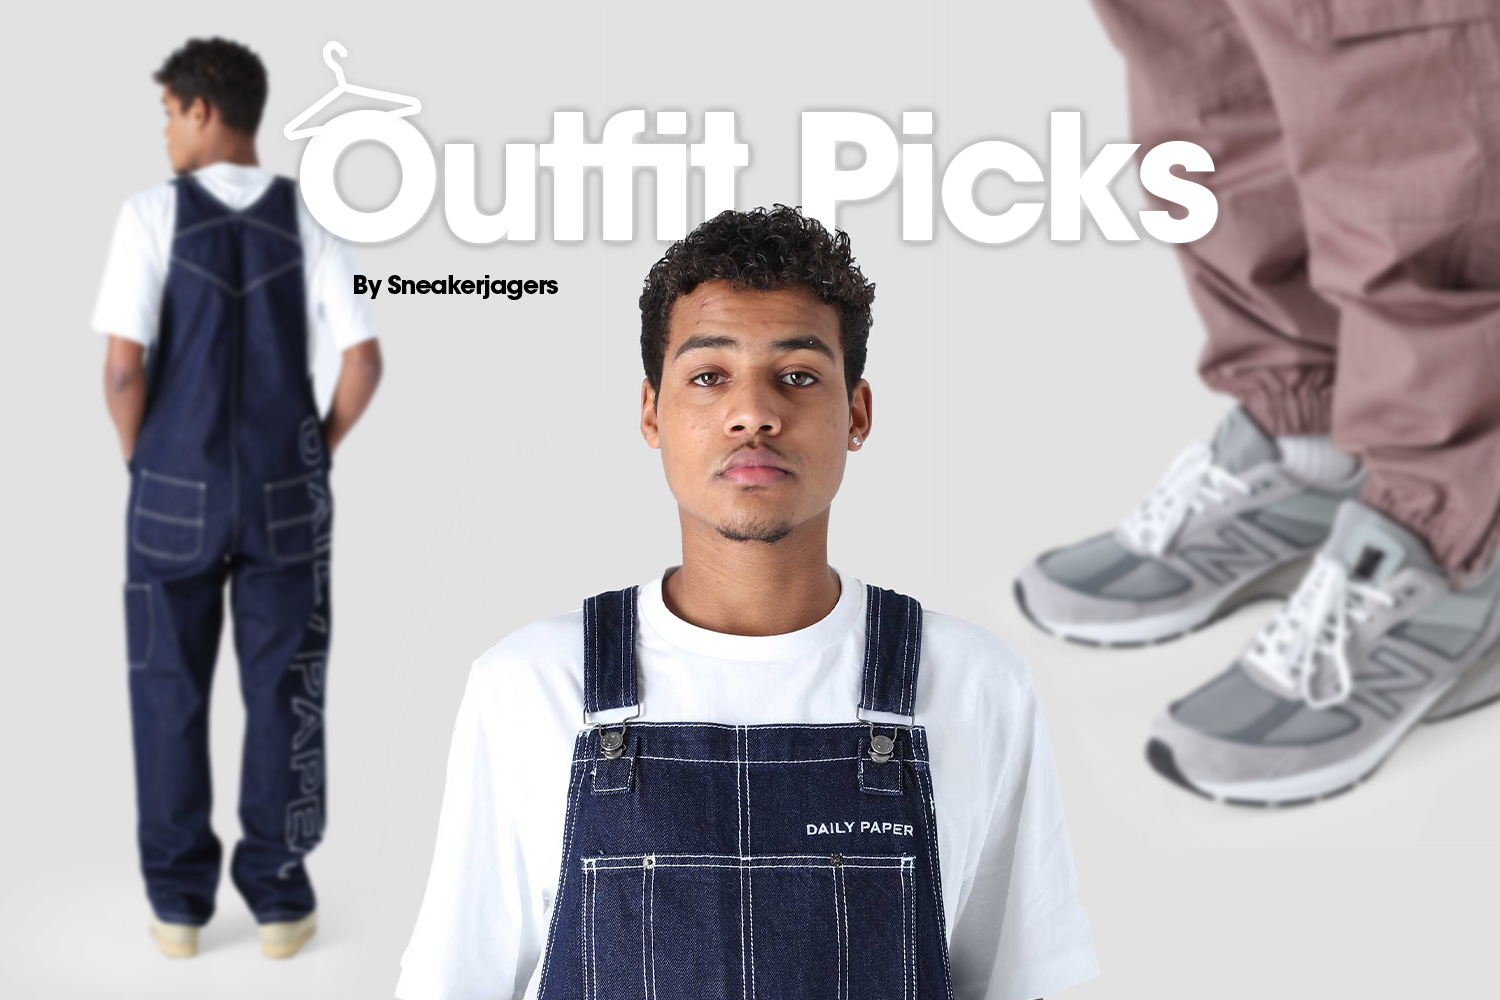 Outfit Picks by Sneakerjagers - week 2